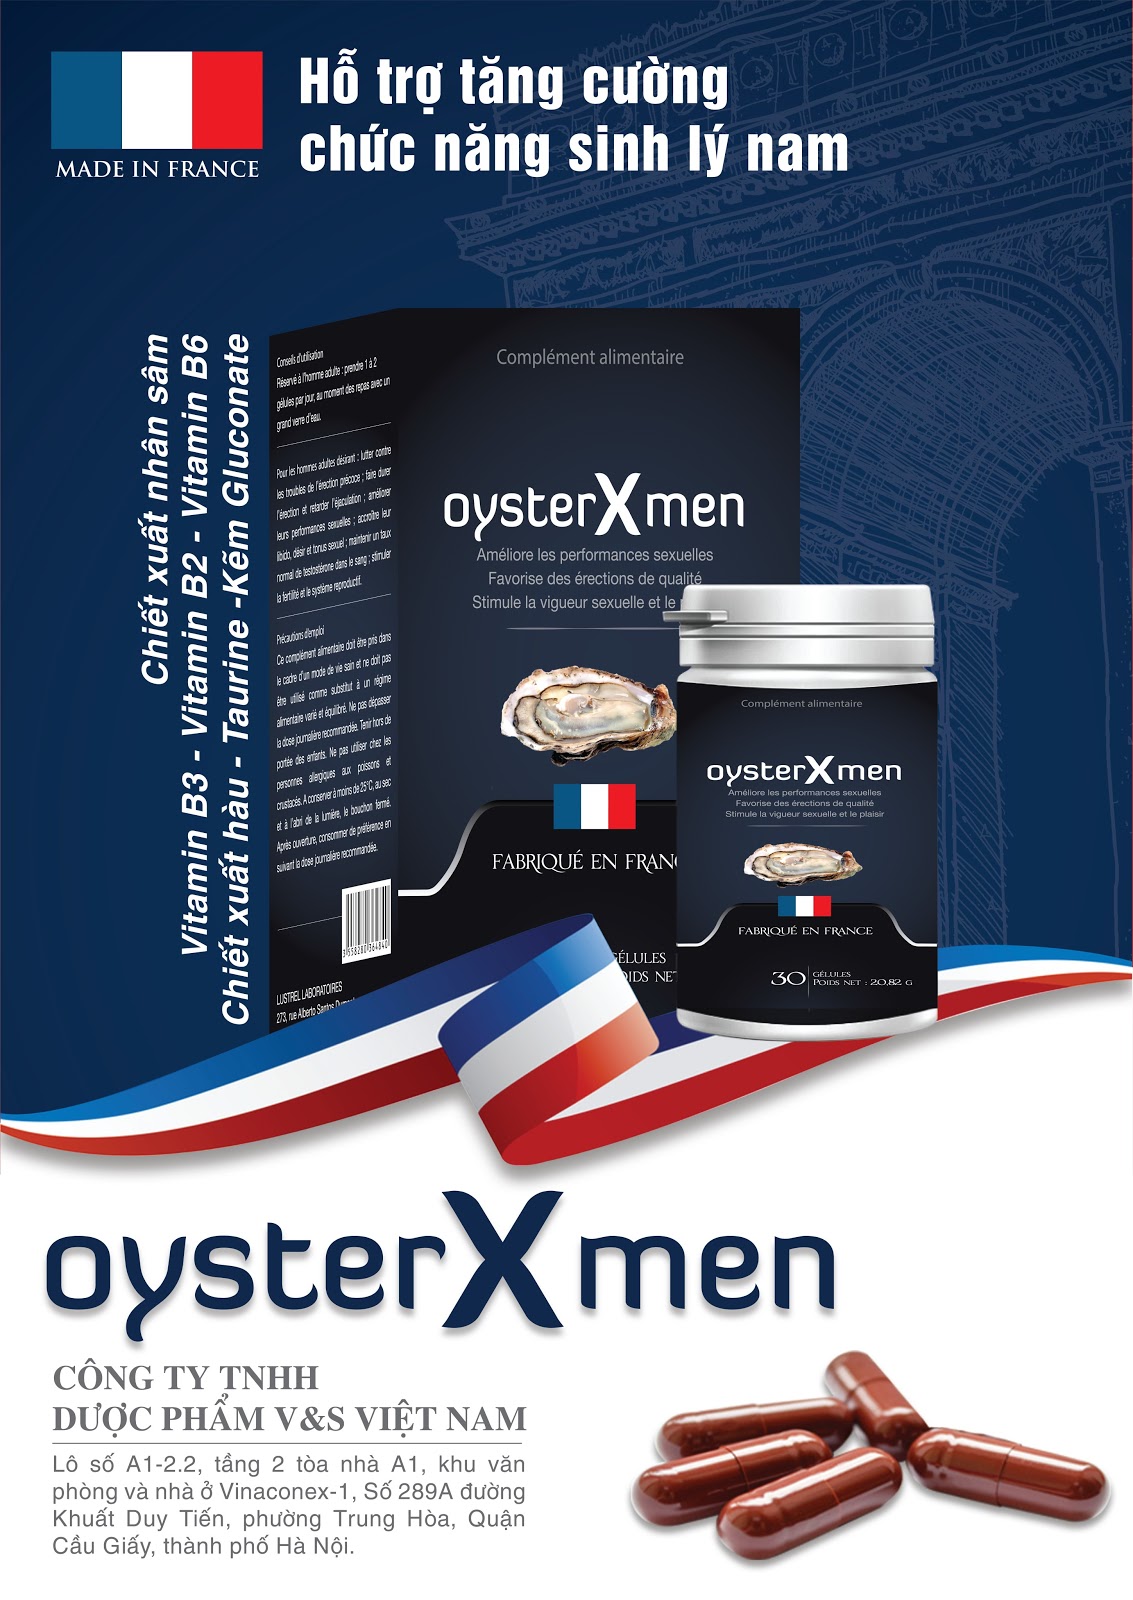 Oyster Xmen là giải pháp hữu hiệu cho đấng mày râu 